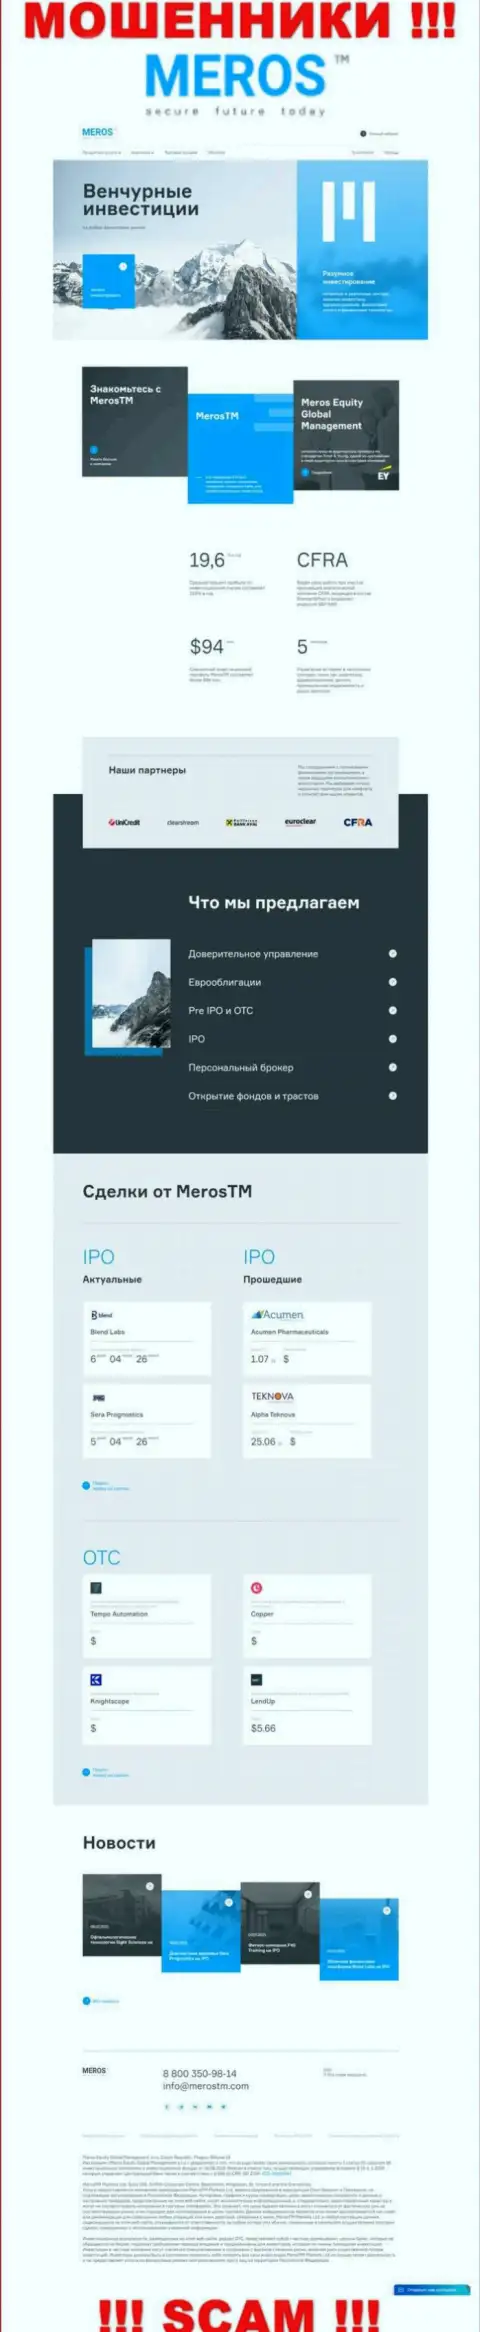 Разбор официального сайта аферистов MerosTM